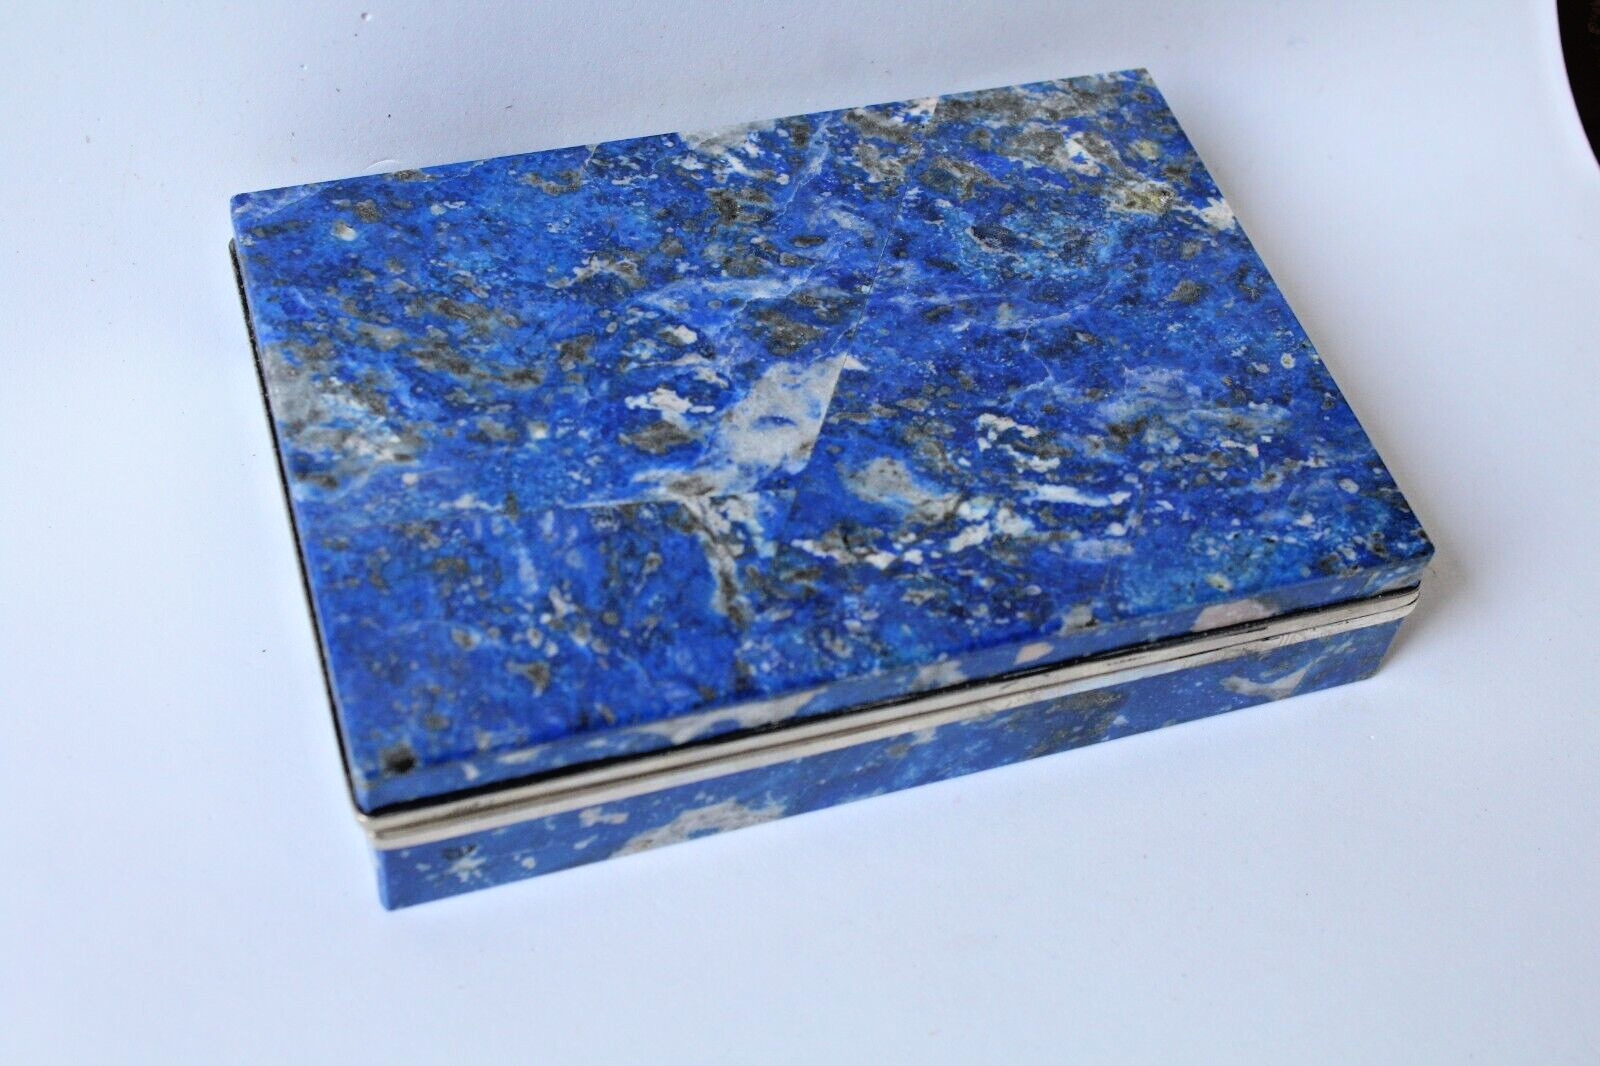 Box - Lapis Lazuli 34.92 oz 1.57x6.89x4.72 inches Broken hinge